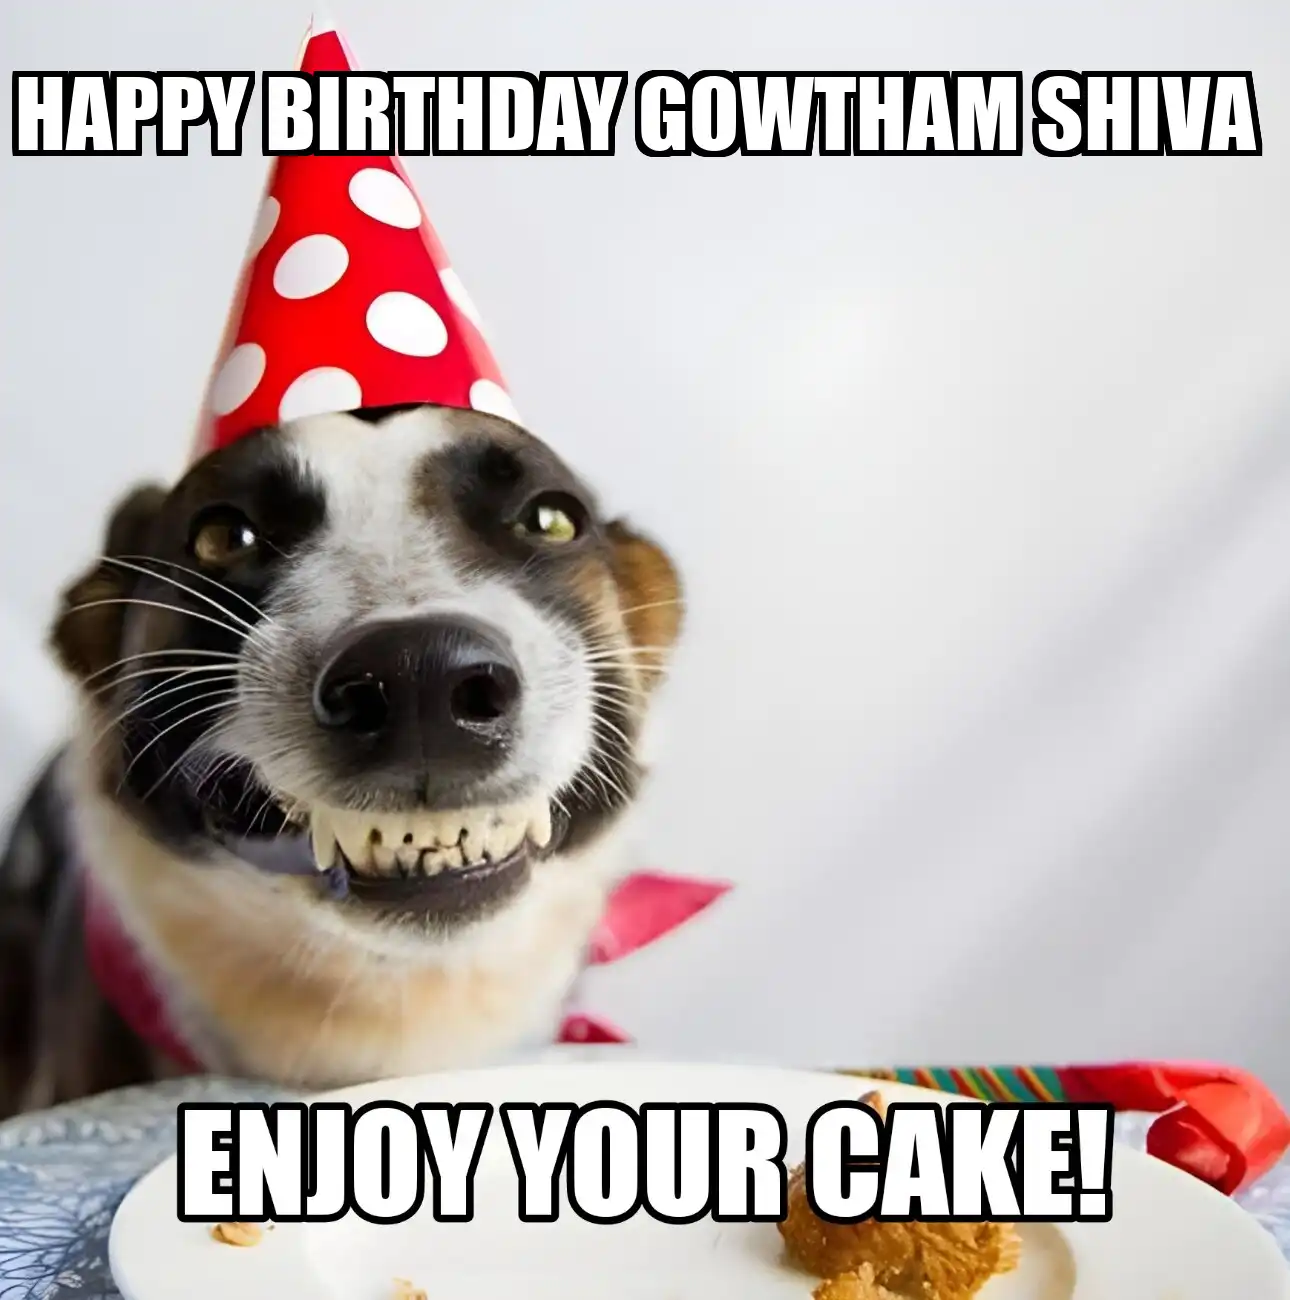 Happy Birthday Gowtham shiva Enjoy Your Cake Dog Meme